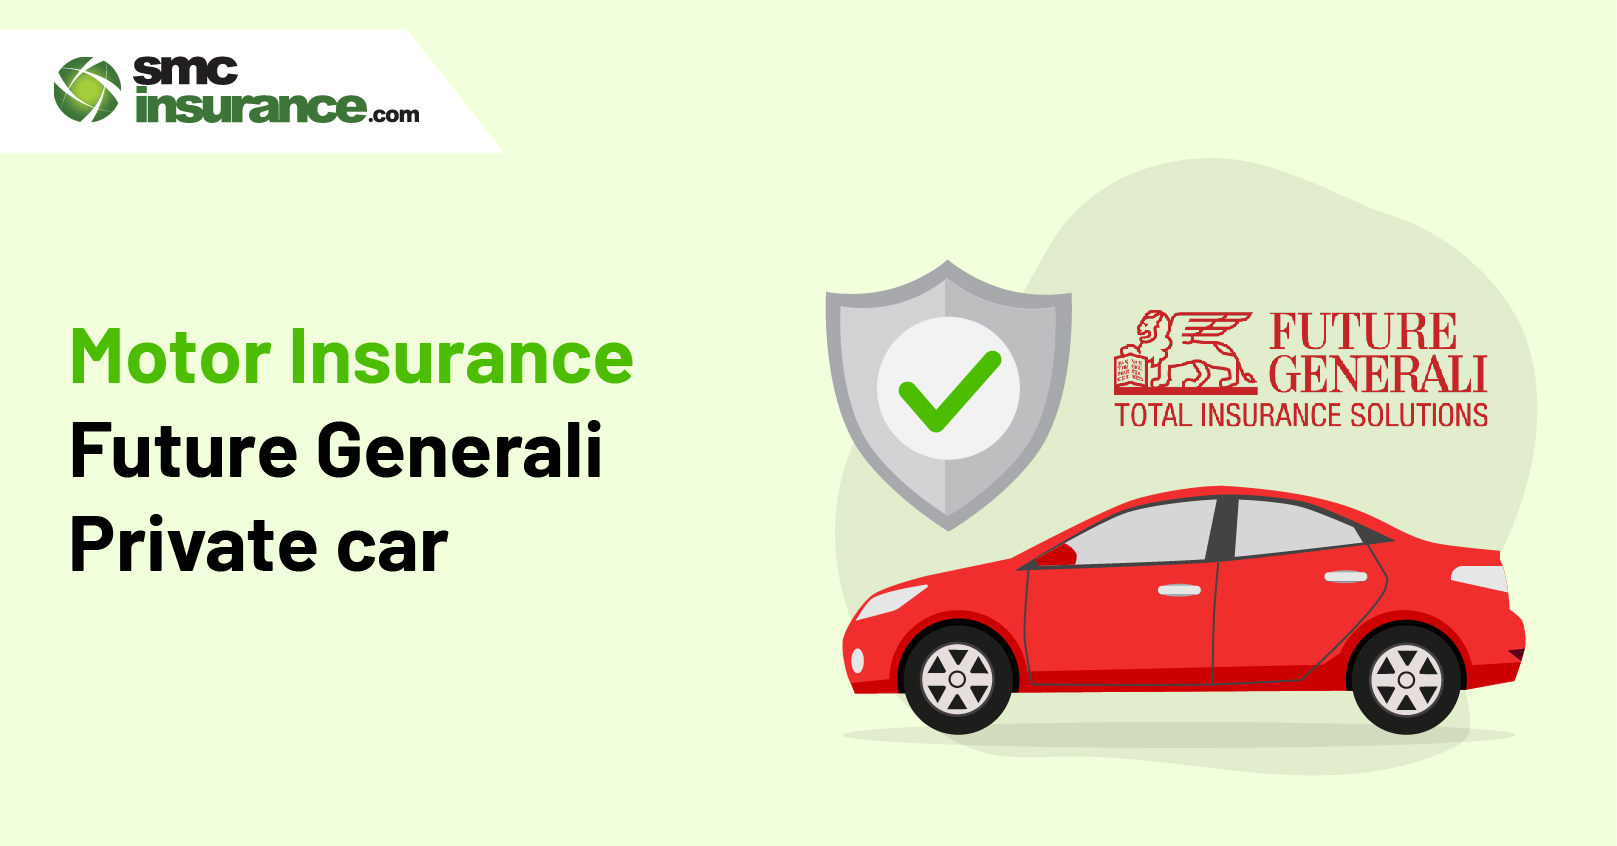 Motor Insurance Future Generali (Private car)